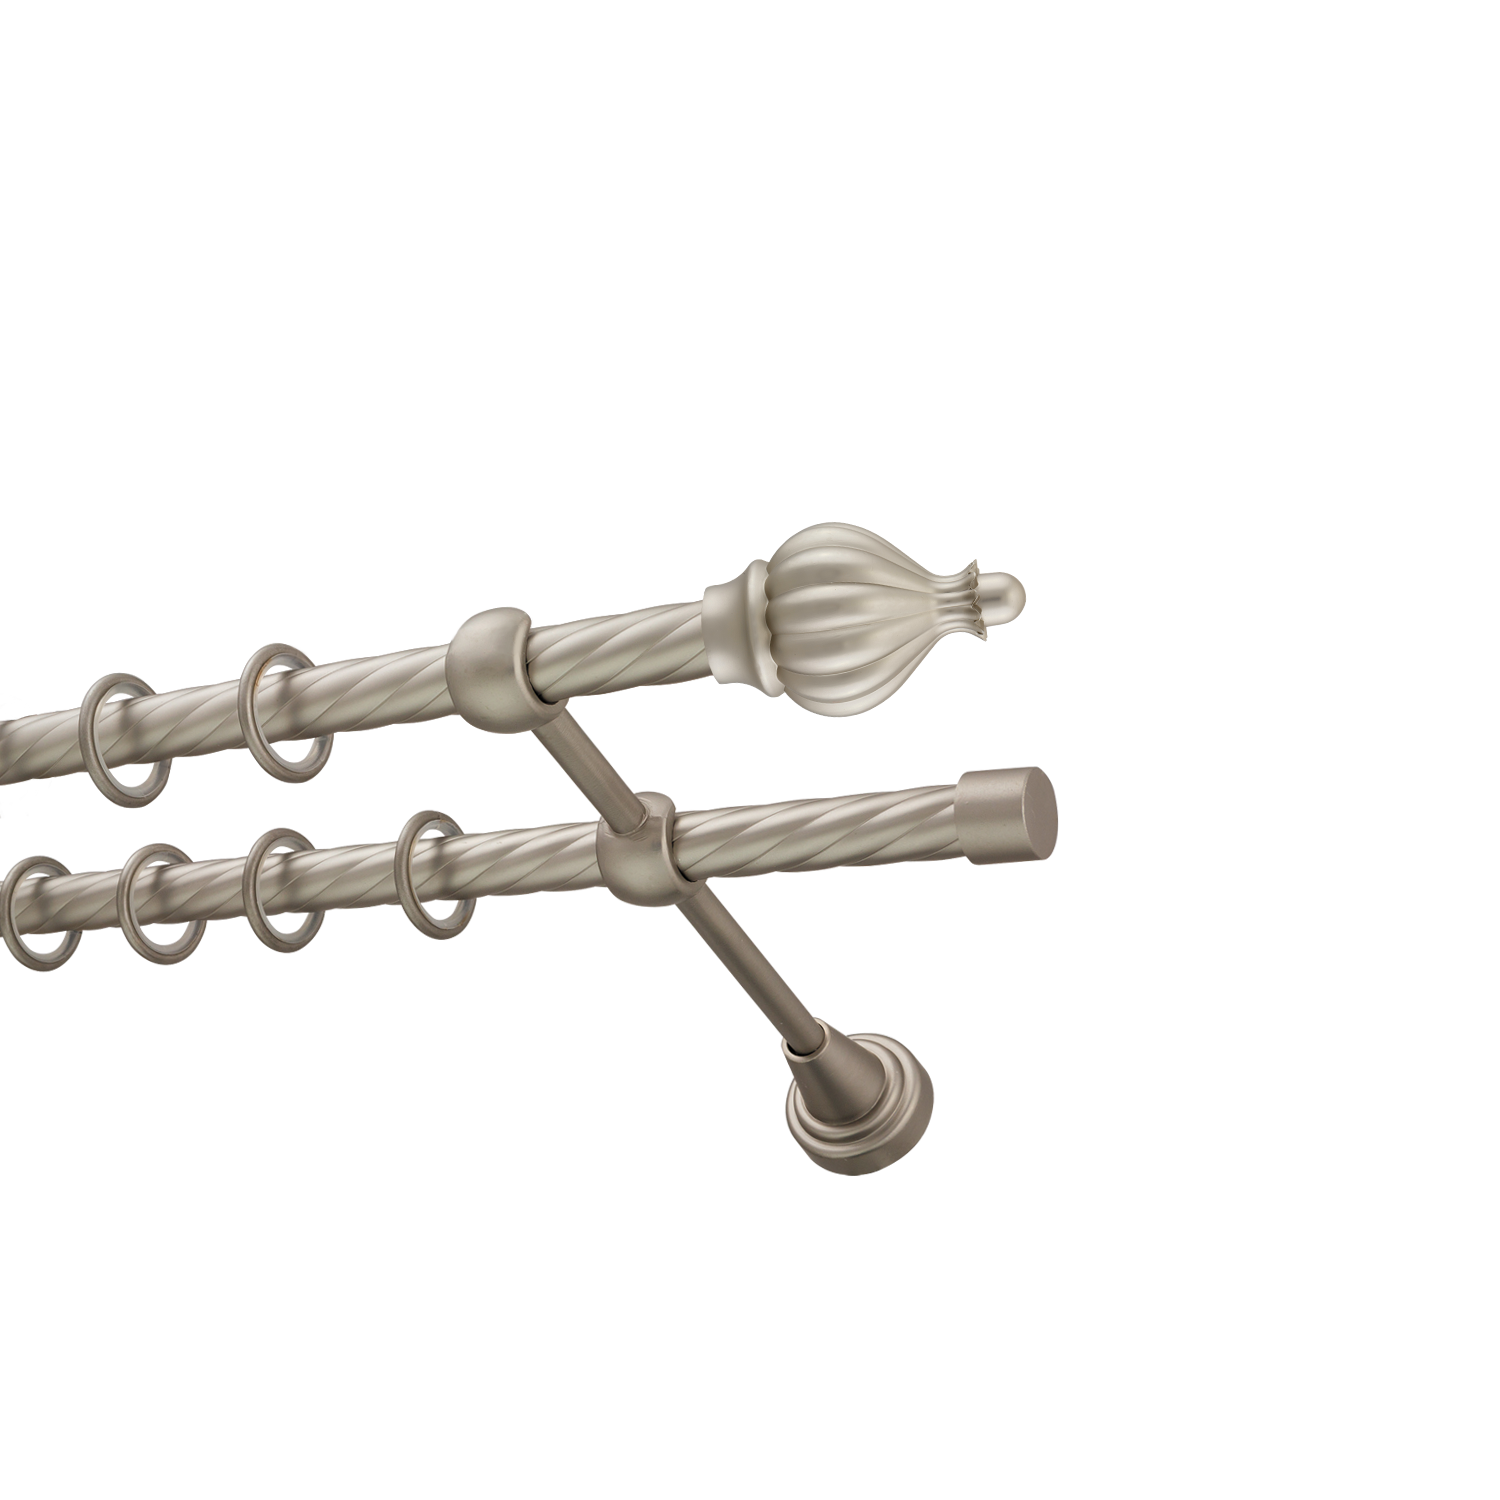 Металлический карниз для штор Афродита, двухрядный 16/16 мм, сталь, витая штанга, длина 180 см